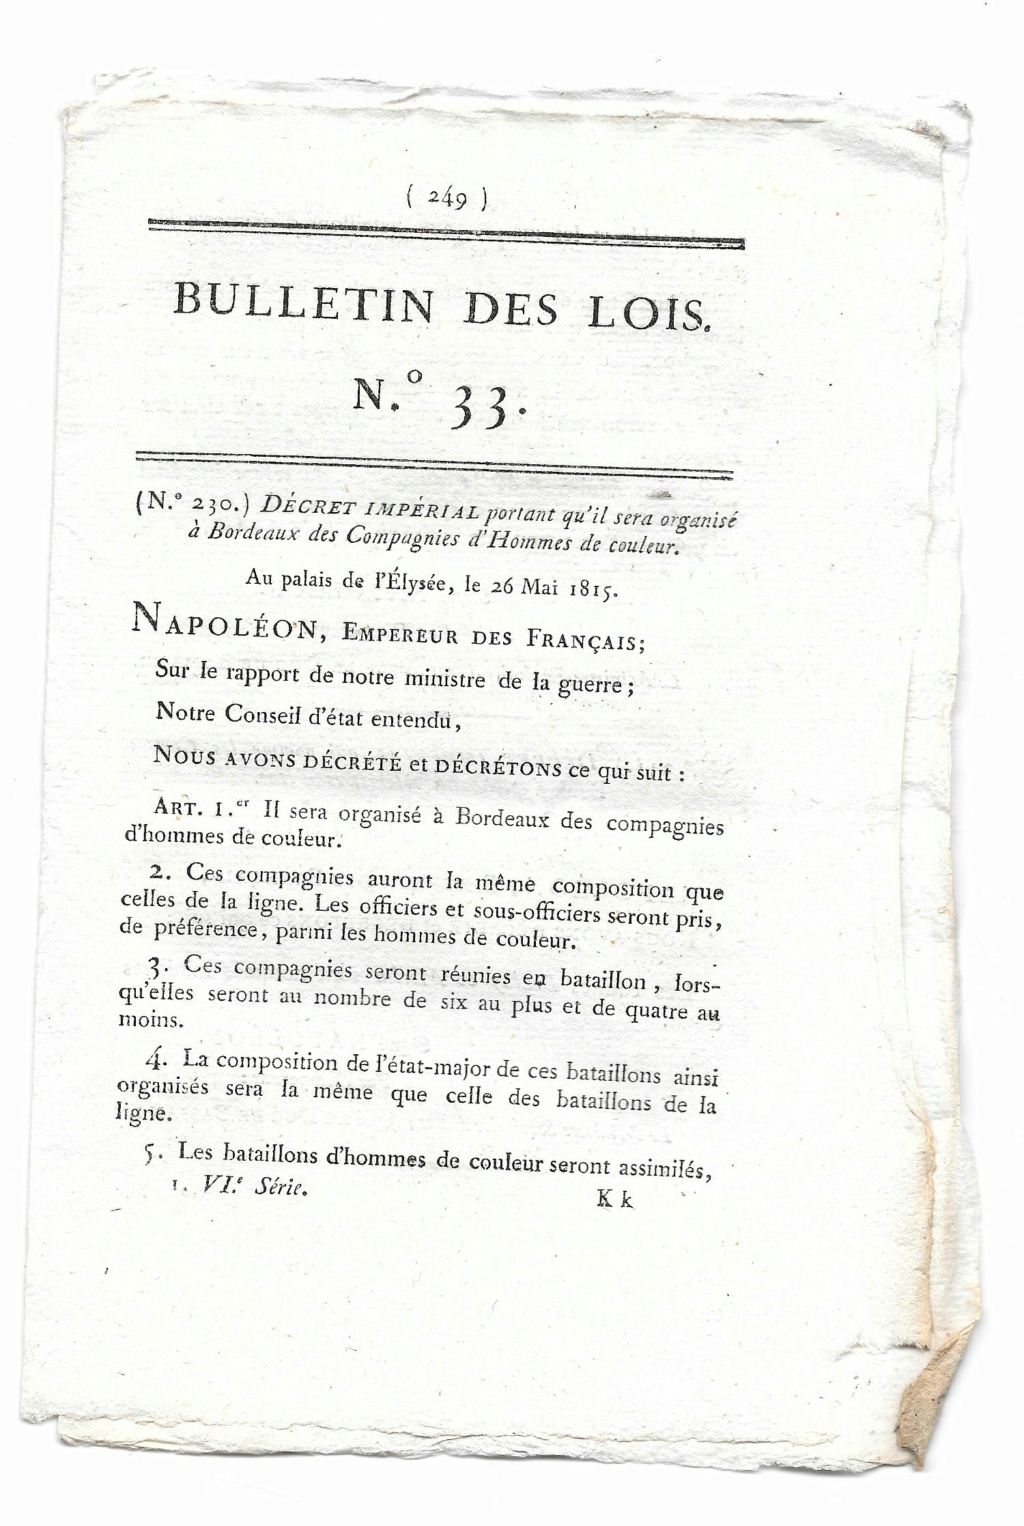  Bordeaux. Compagnies d'hommes de couleur 26 Mai 1815 129_3310